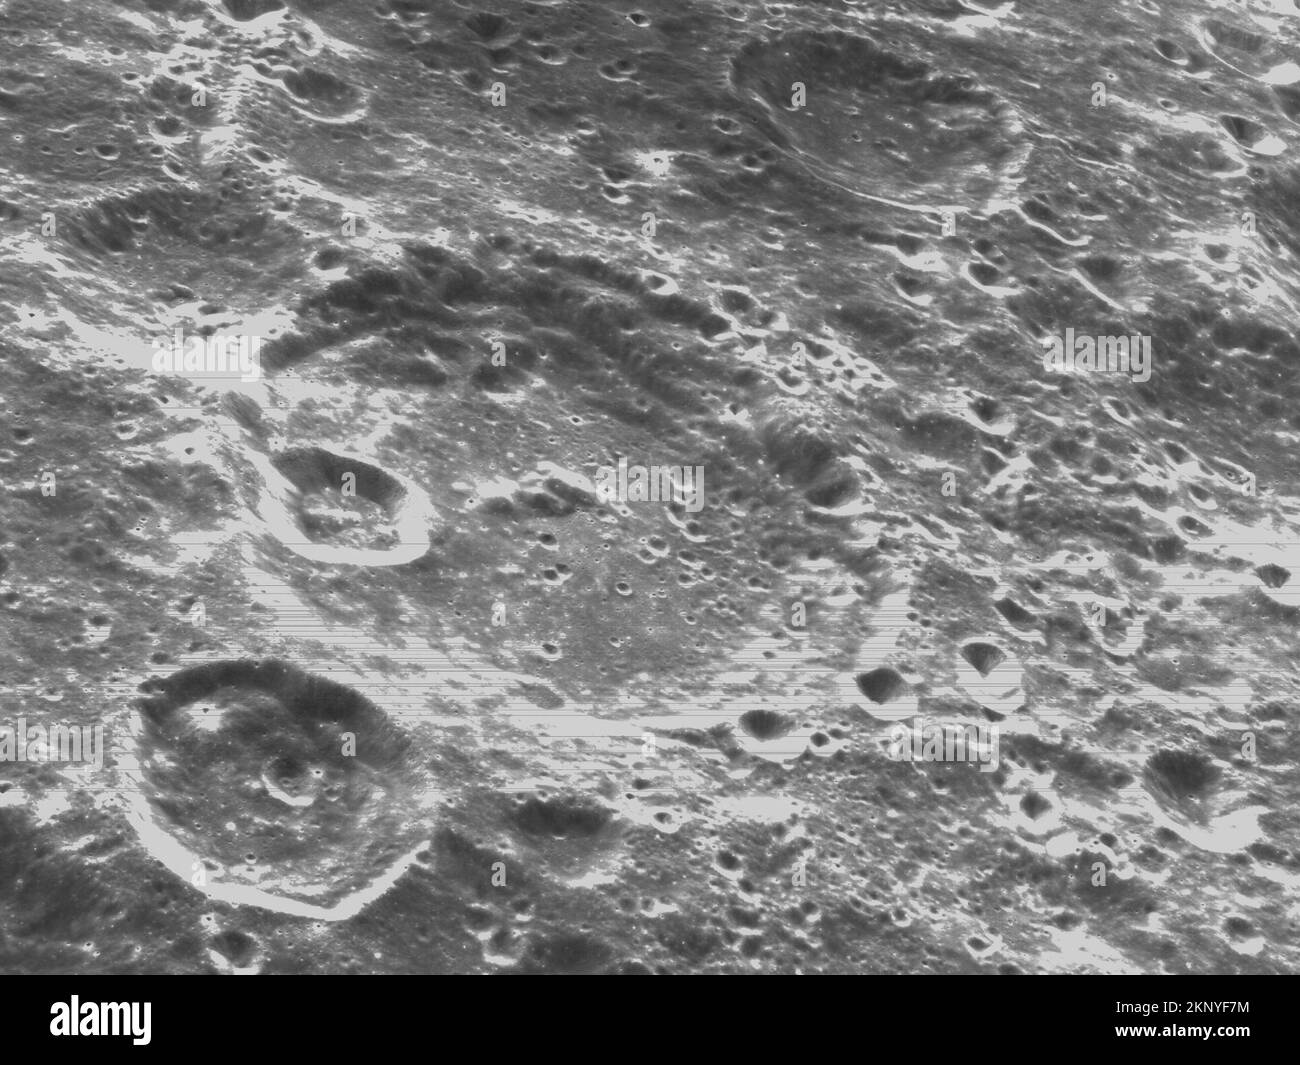 Washington, États-Unis. 23rd novembre 2022. Sur 21 novembre 2022, sixième jour de vol de la mission Artemis I, la caméra de navigation optique d'Orion a capturé des images en noir et blanc de cratères sur la Lune en dessous. Orion utilise la caméra de navigation optique pour capturer des images de la Terre et de la Lune à différentes phases et distances, fournissant un ensemble amélioré de données pour certifier son efficacité sous différentes conditions d'éclairage comme moyen d'orienter l'engin spatial dans les missions futures avec l'équipage. Crédit NASA/UPI : UPI/Alay Live News Banque D'Images